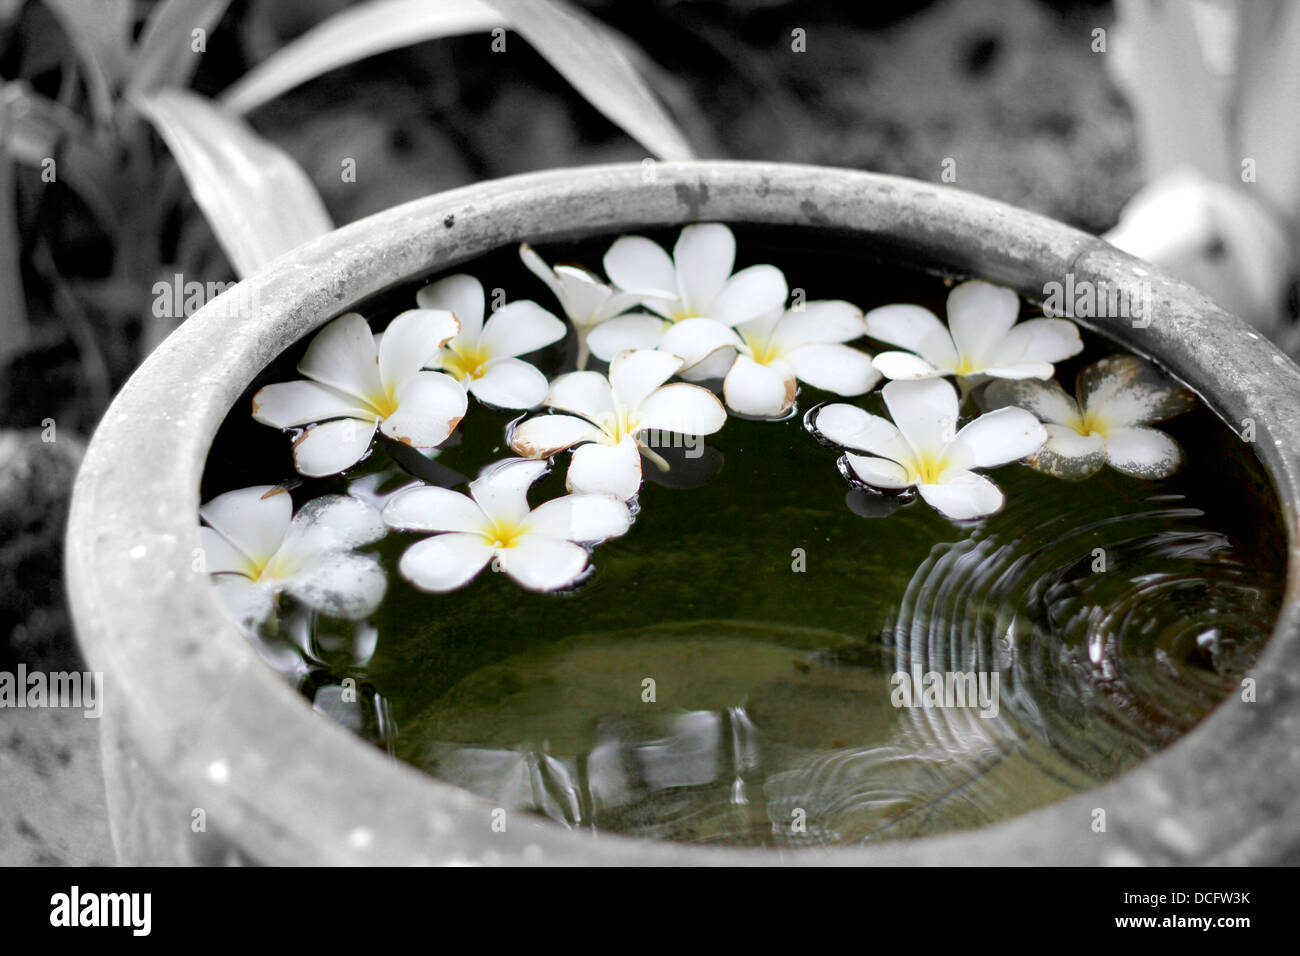 Couleur et noir et blanc. Fleurs de Plumeria est tombé dans le pot de terre cuite rempli d'eau de pluie / Thailande Banque D'Images